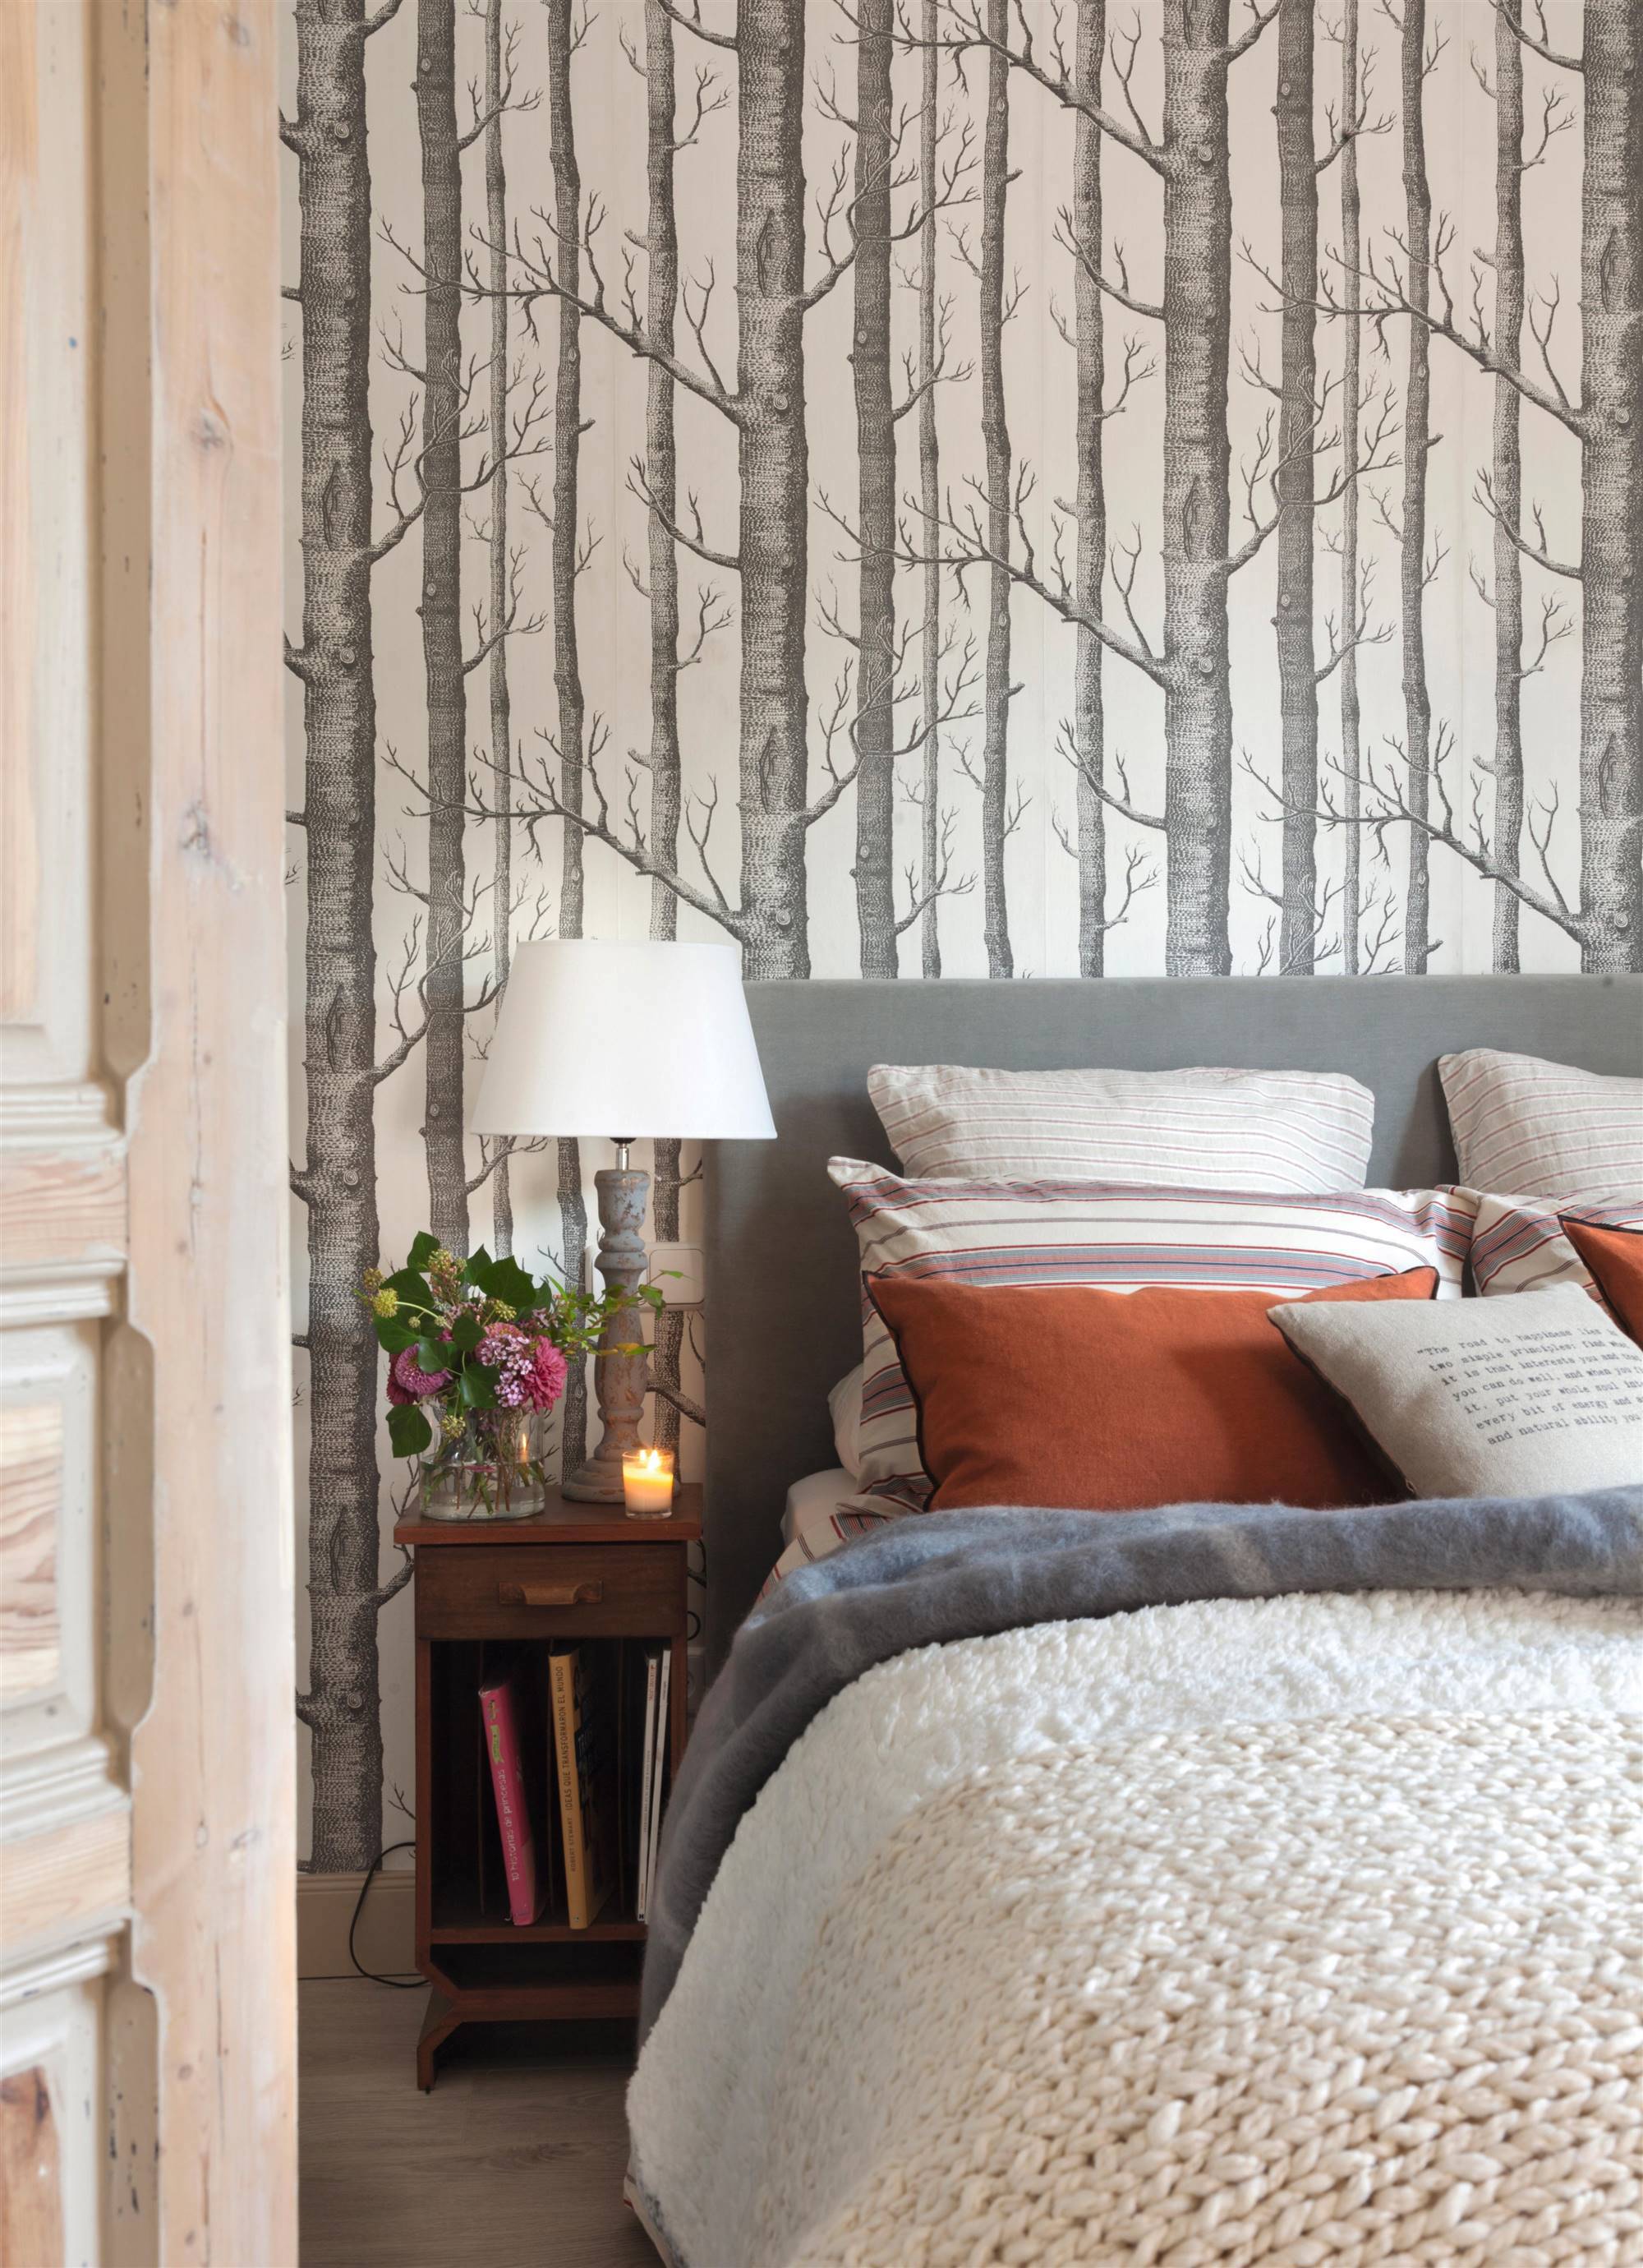 Dormitorio de invierno con papel pintado estampado, cabecero tapizado y manta de punto.